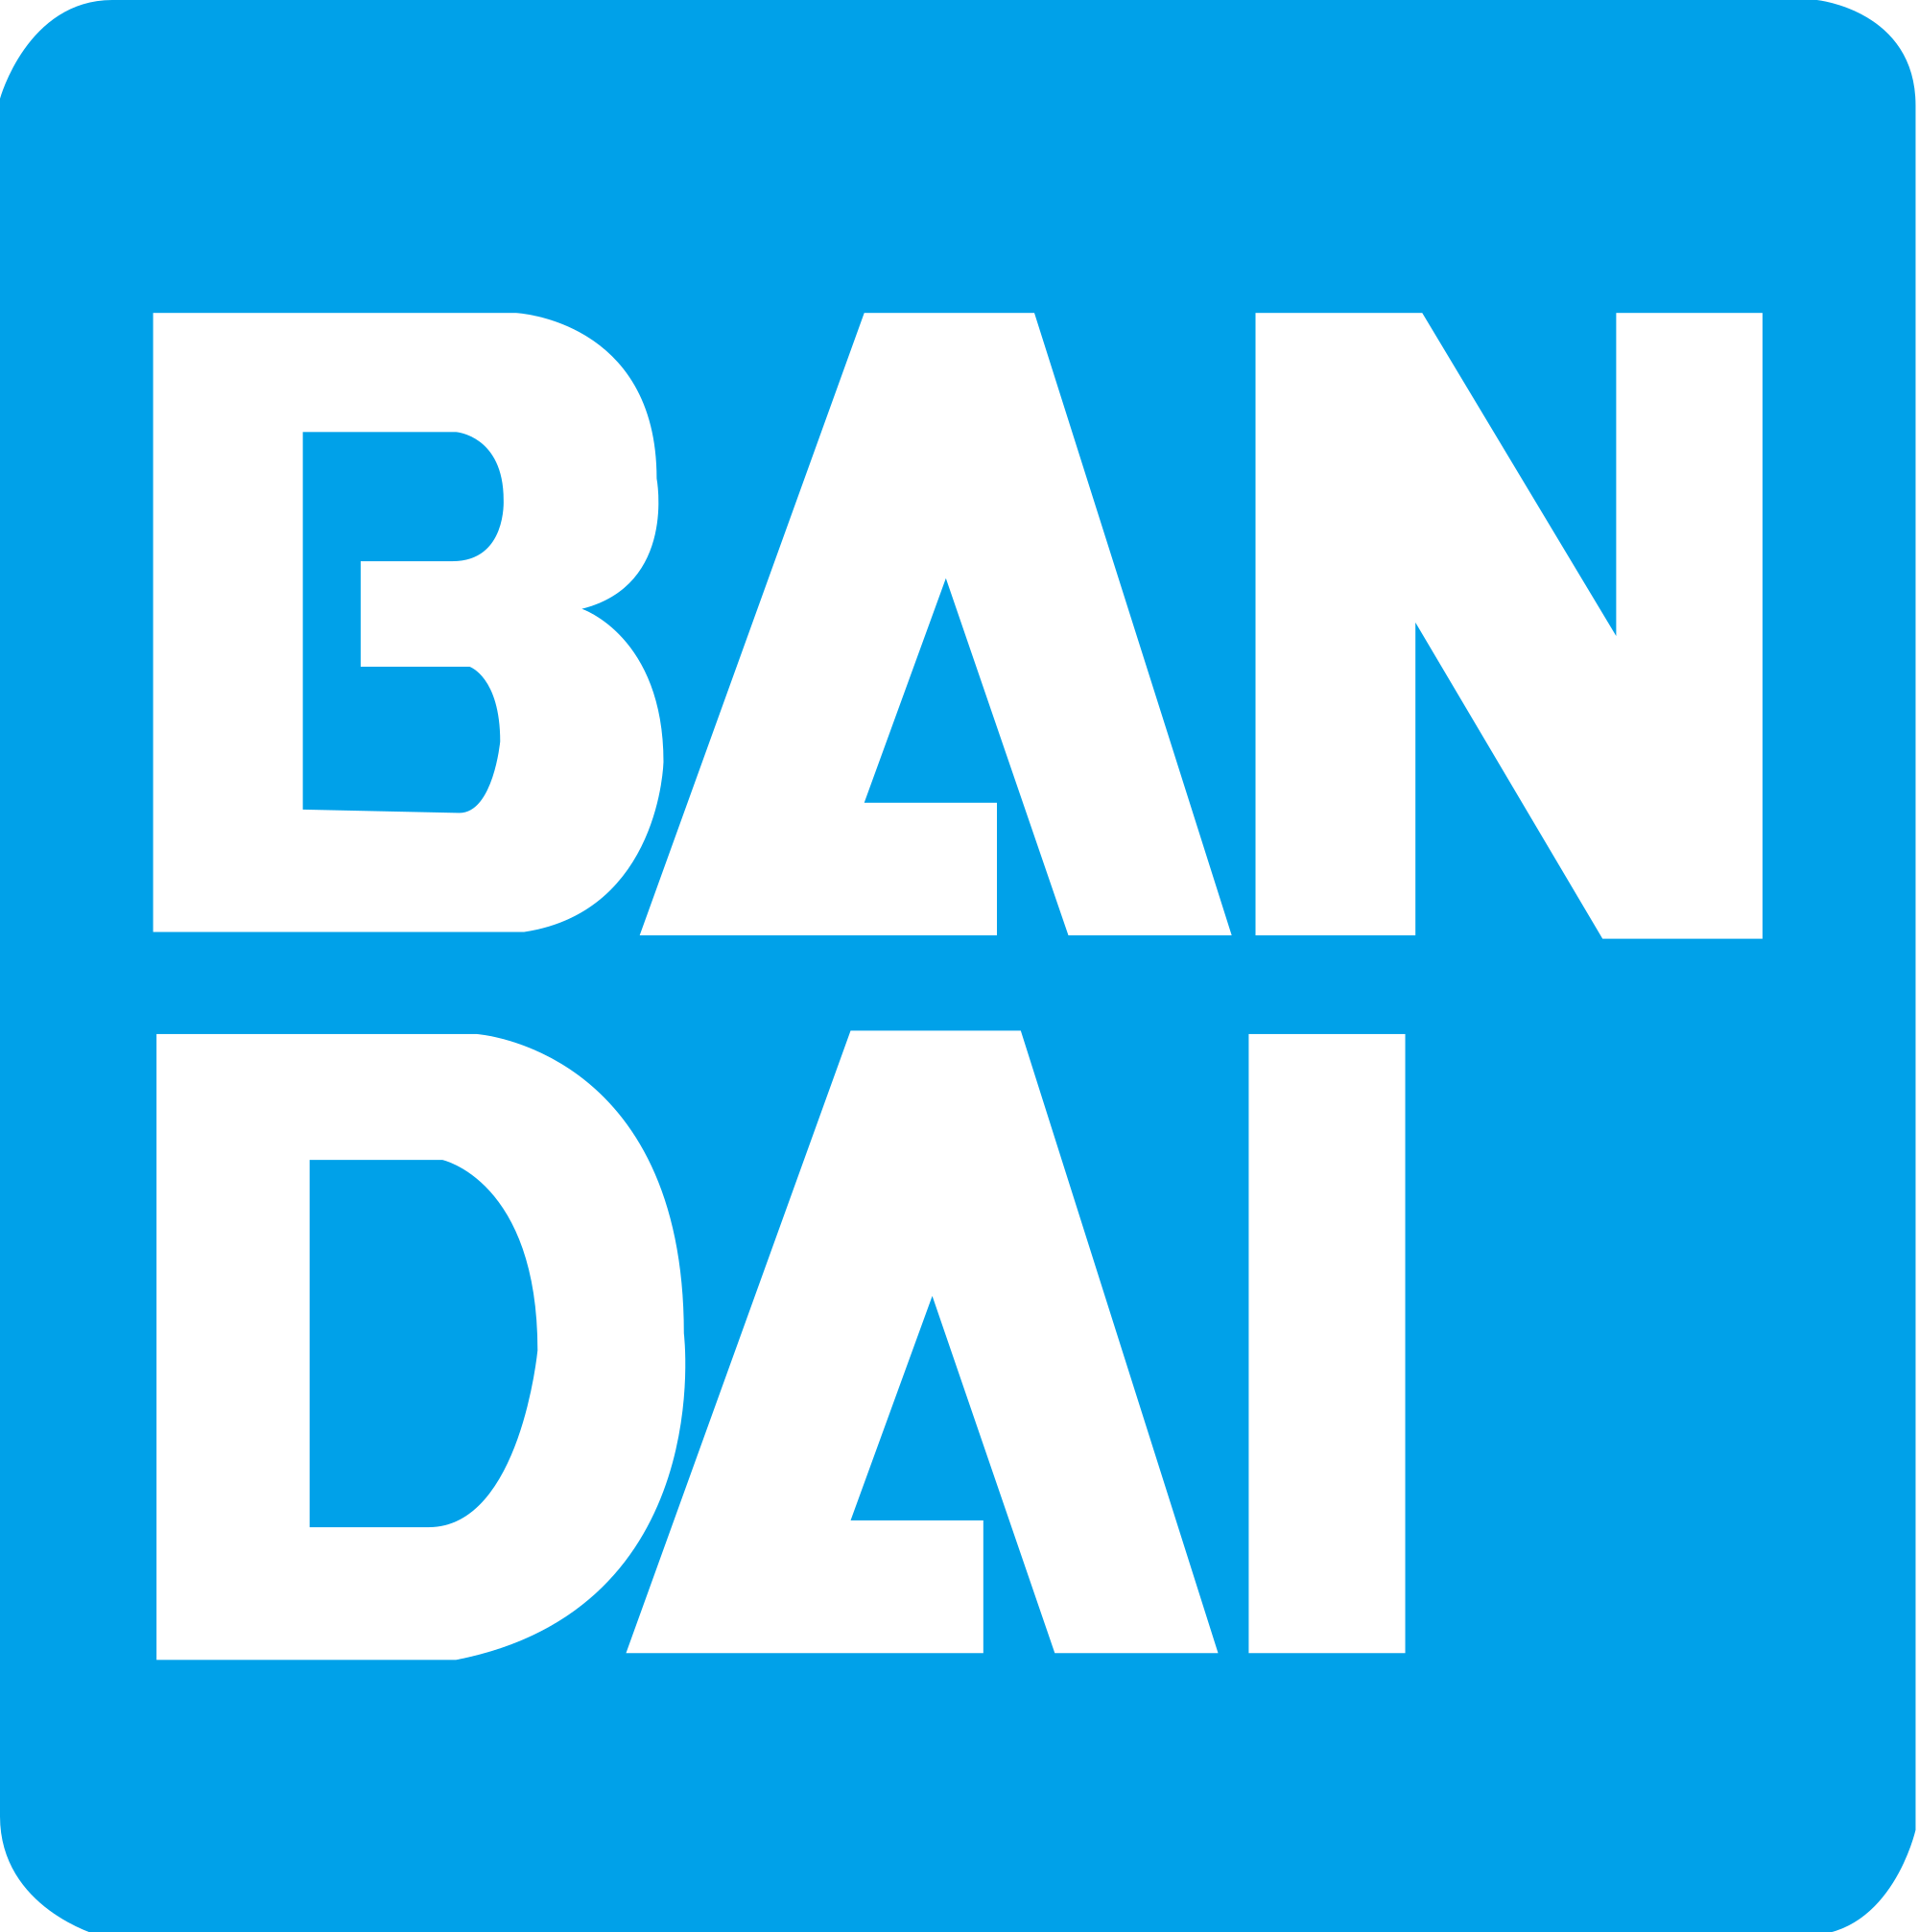 Bandai Spirits - company